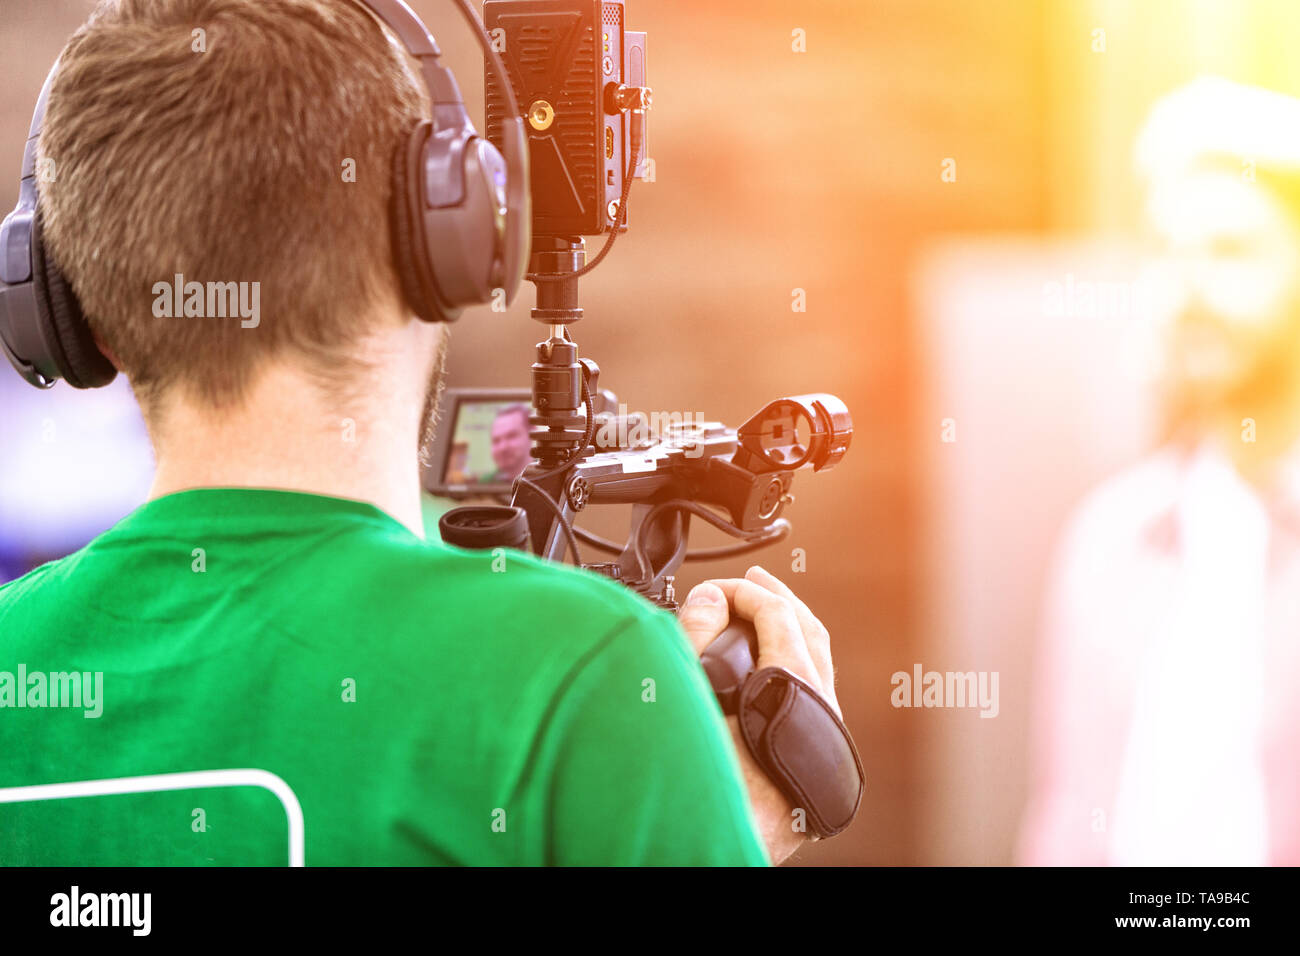 Le concept de la création de TV, du contenu vidéo, backstage. Un caméraman  professionnel est de tournage sur une caméra vidéo. Coulisses de l'émission  de télévision de filmer Photo Stock - Alamy